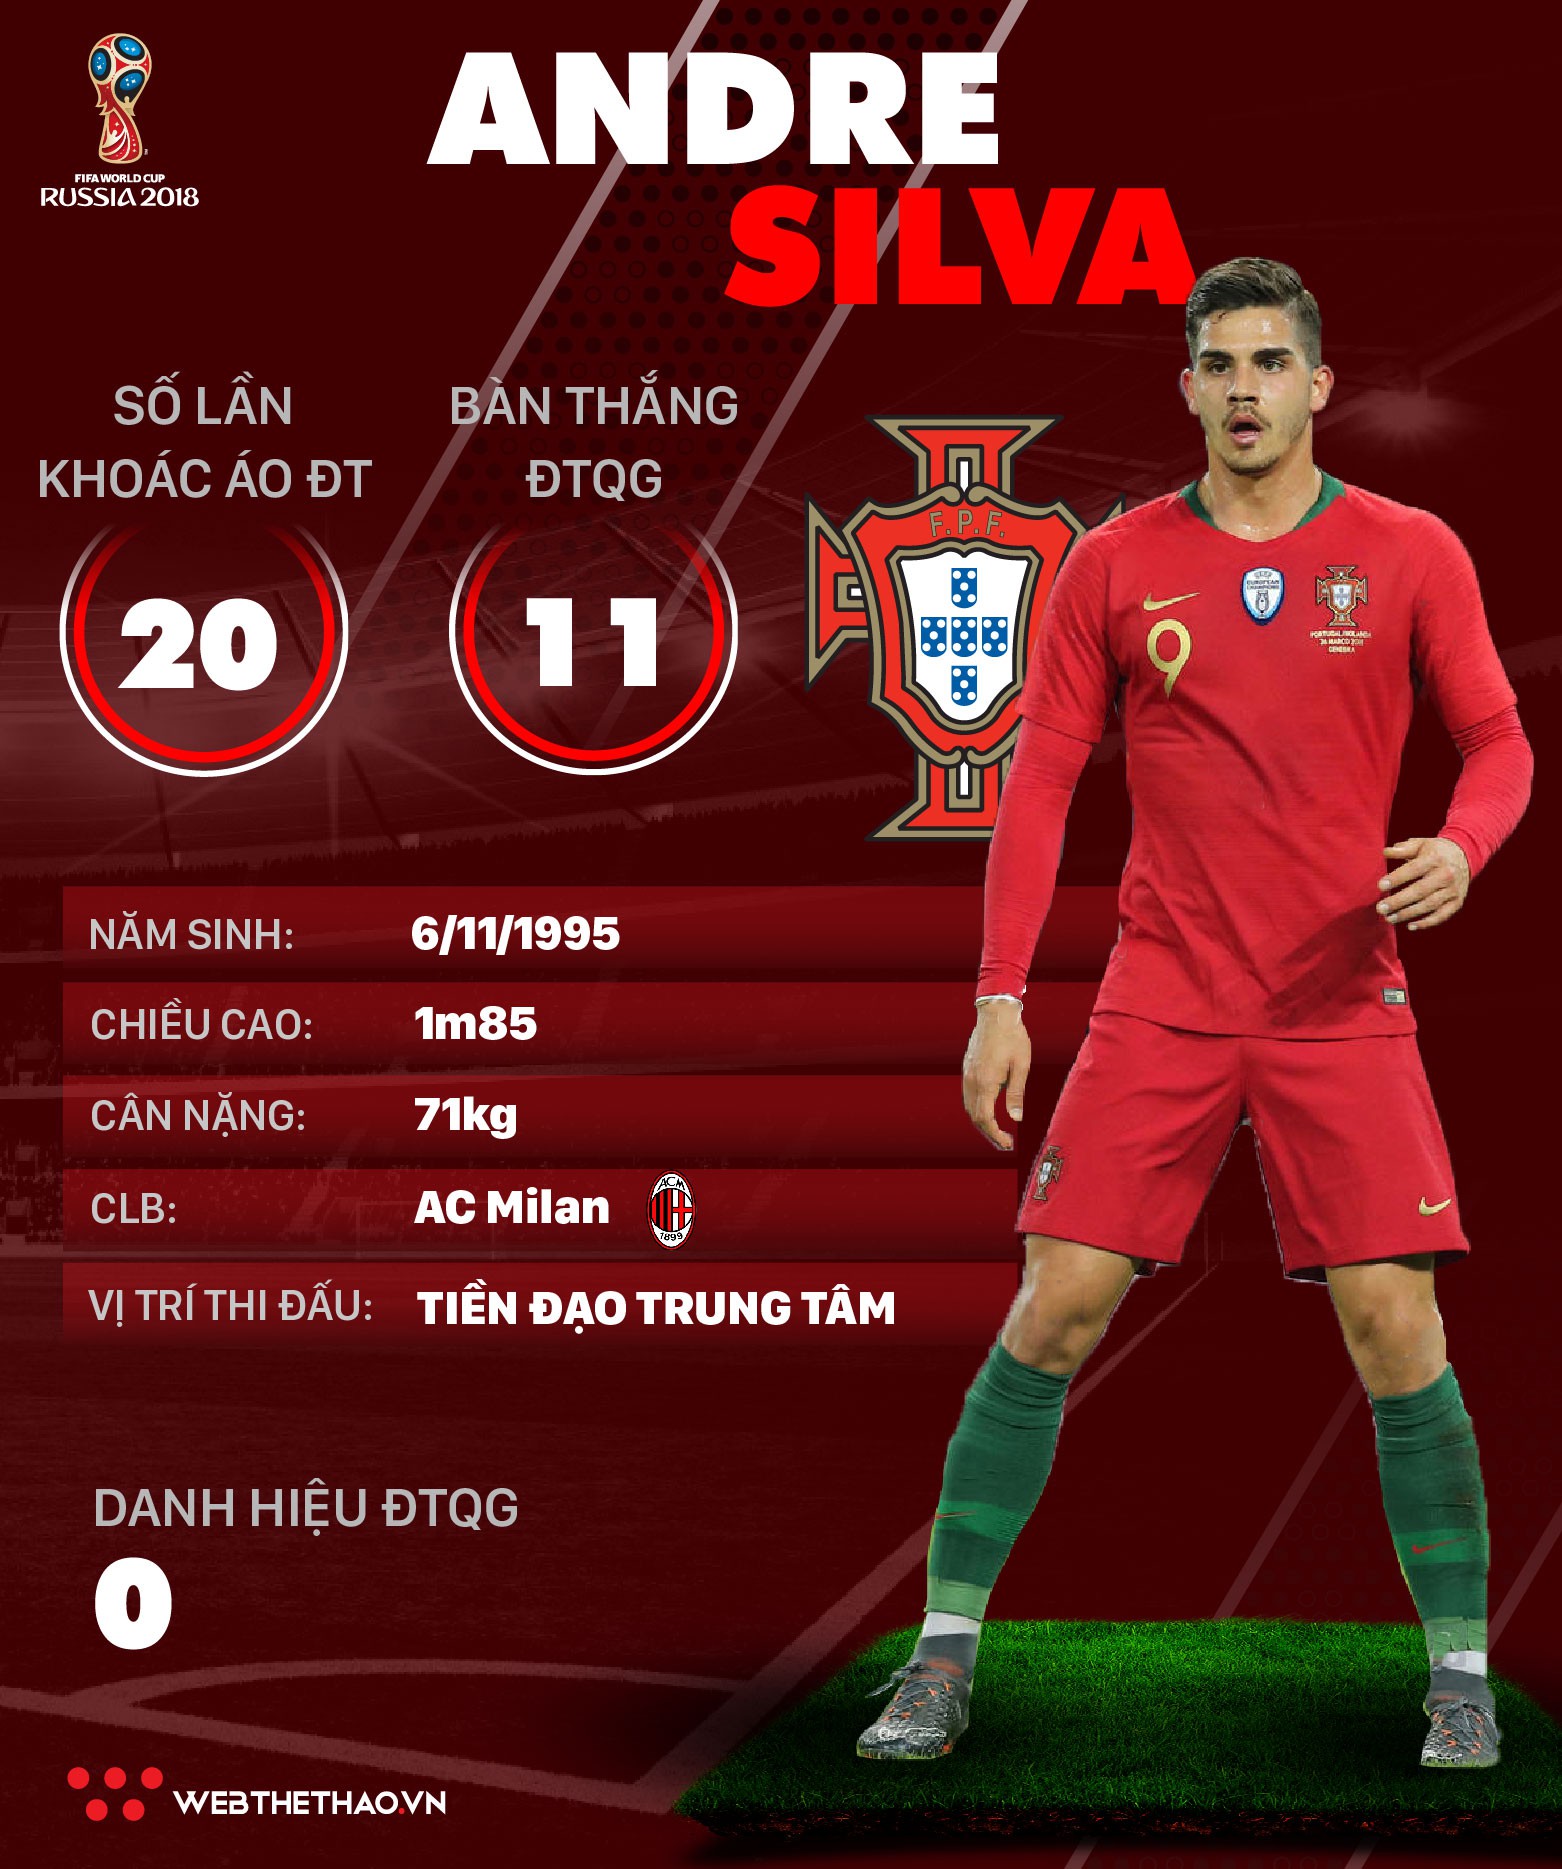 Thông tin cầu thủ Andre Silva của ĐT Bồ Đào Nha dự World Cup 2018 - Ảnh 1.